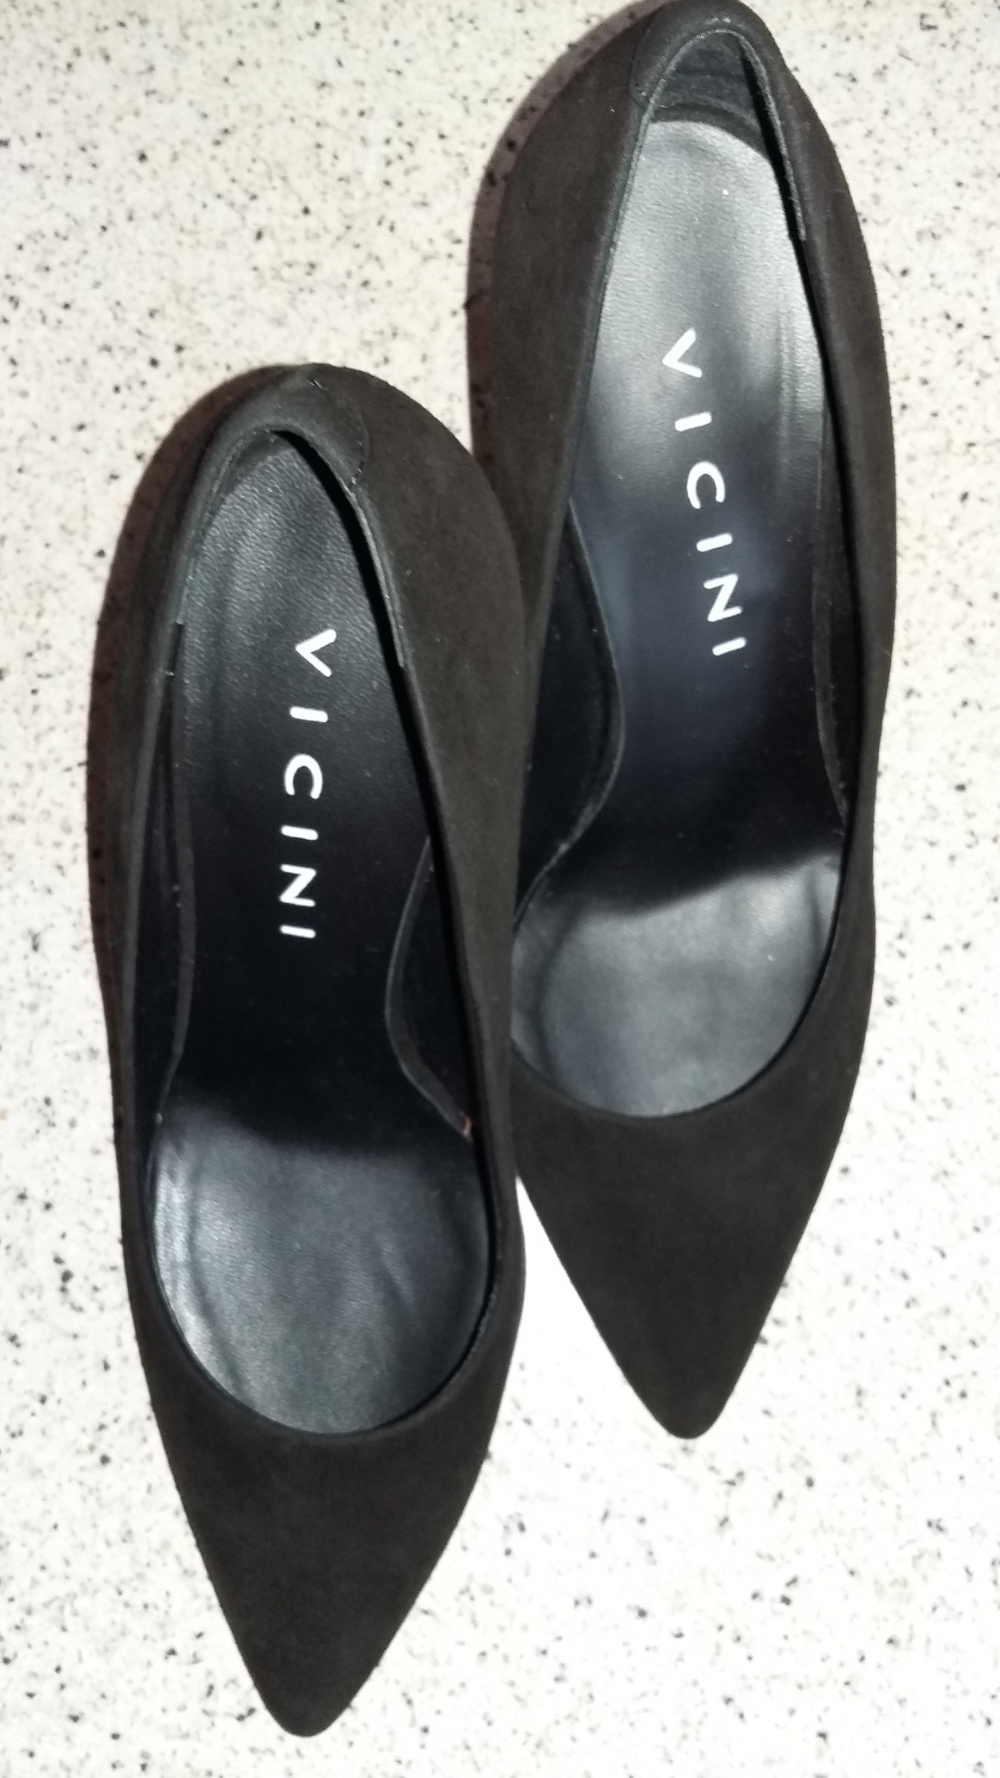 Новые женские туфли VICINI, размер 38 (8 US).